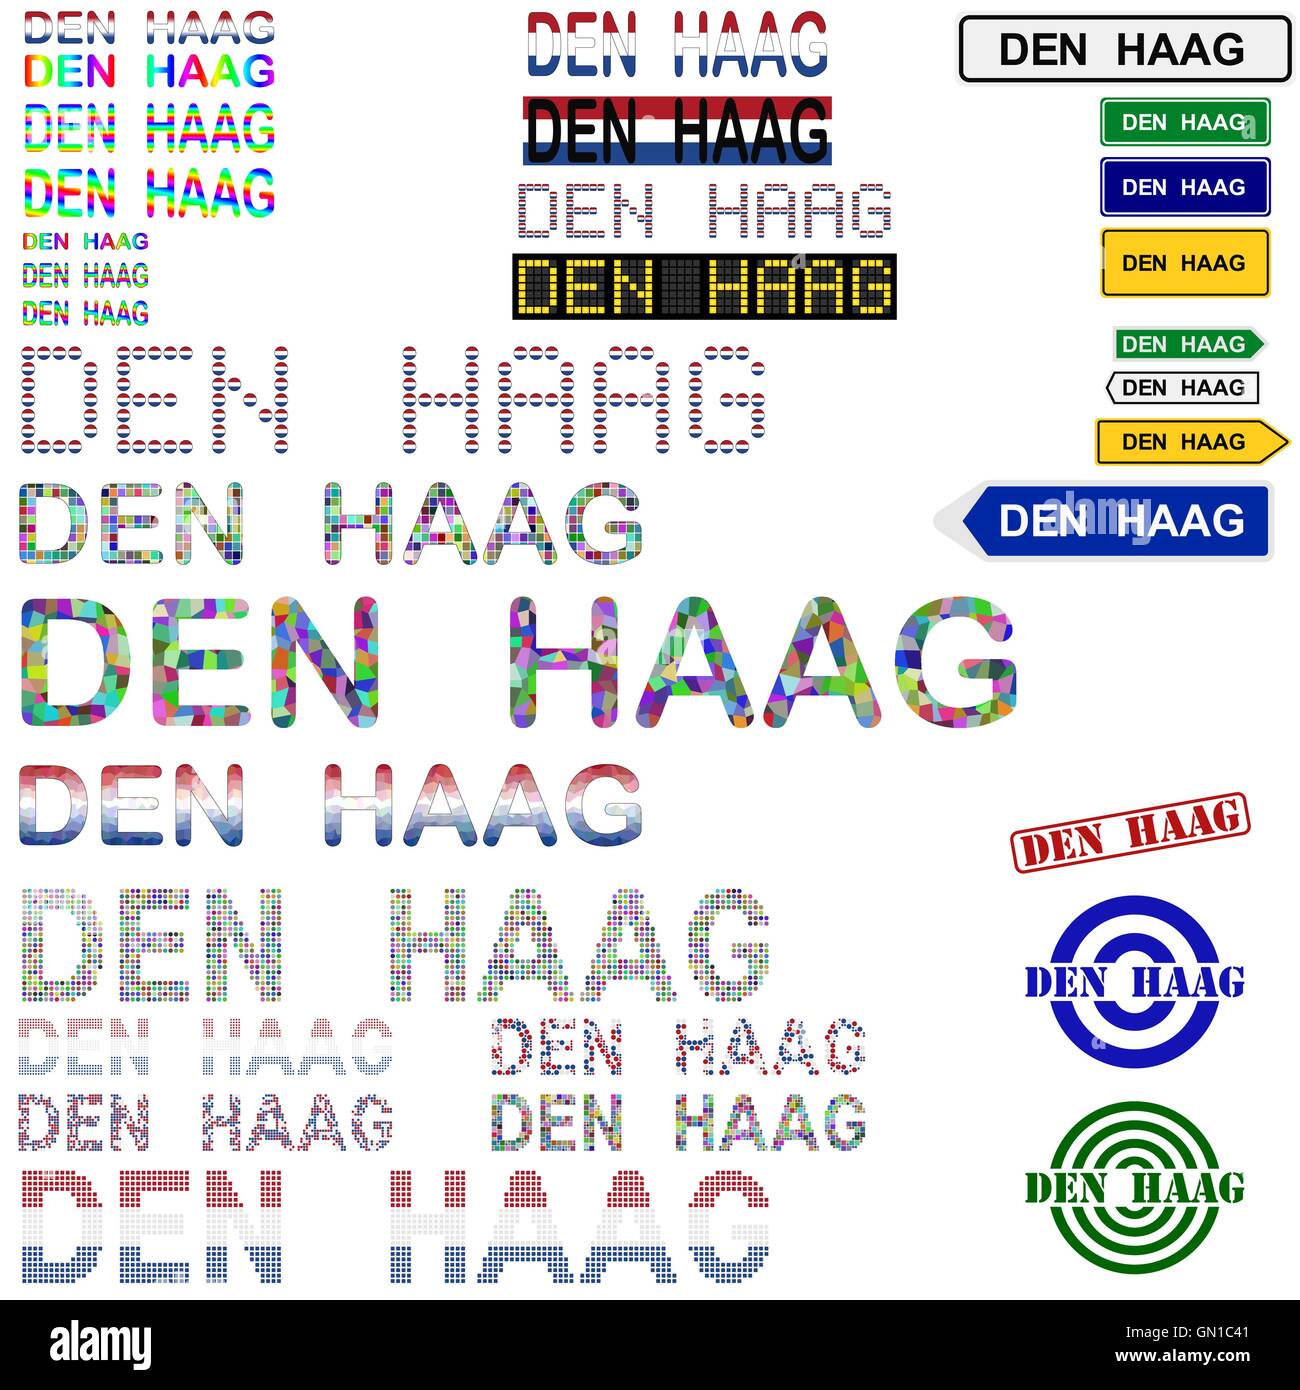 Den Haag (La Haye) set design texte Illustration de Vecteur